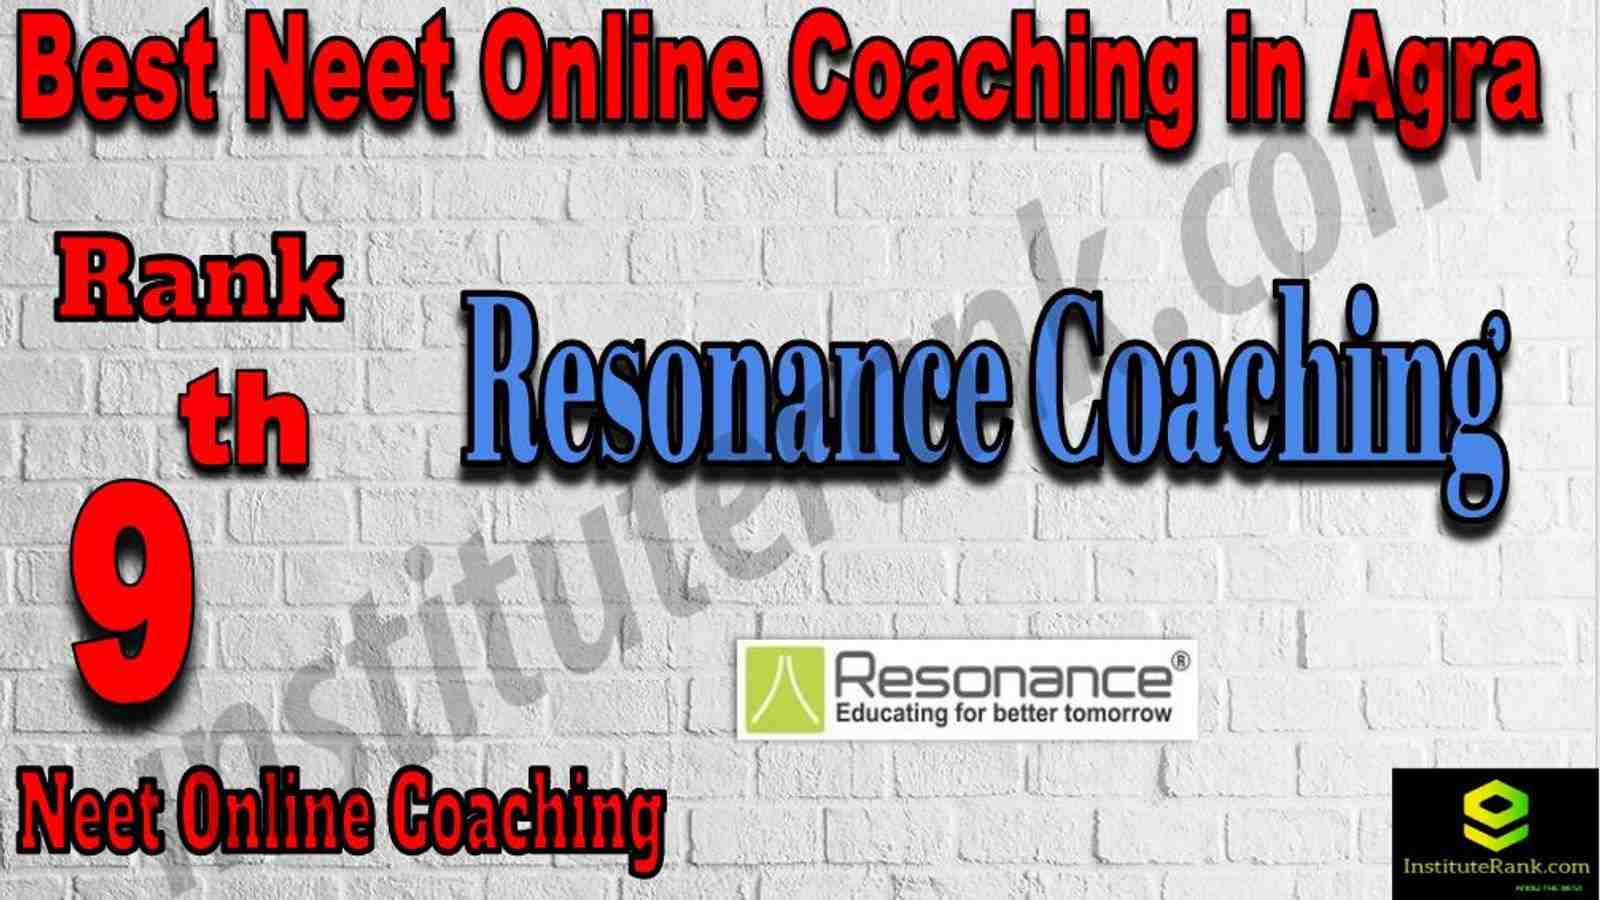 9th Best NEET Online Coaching in Agra